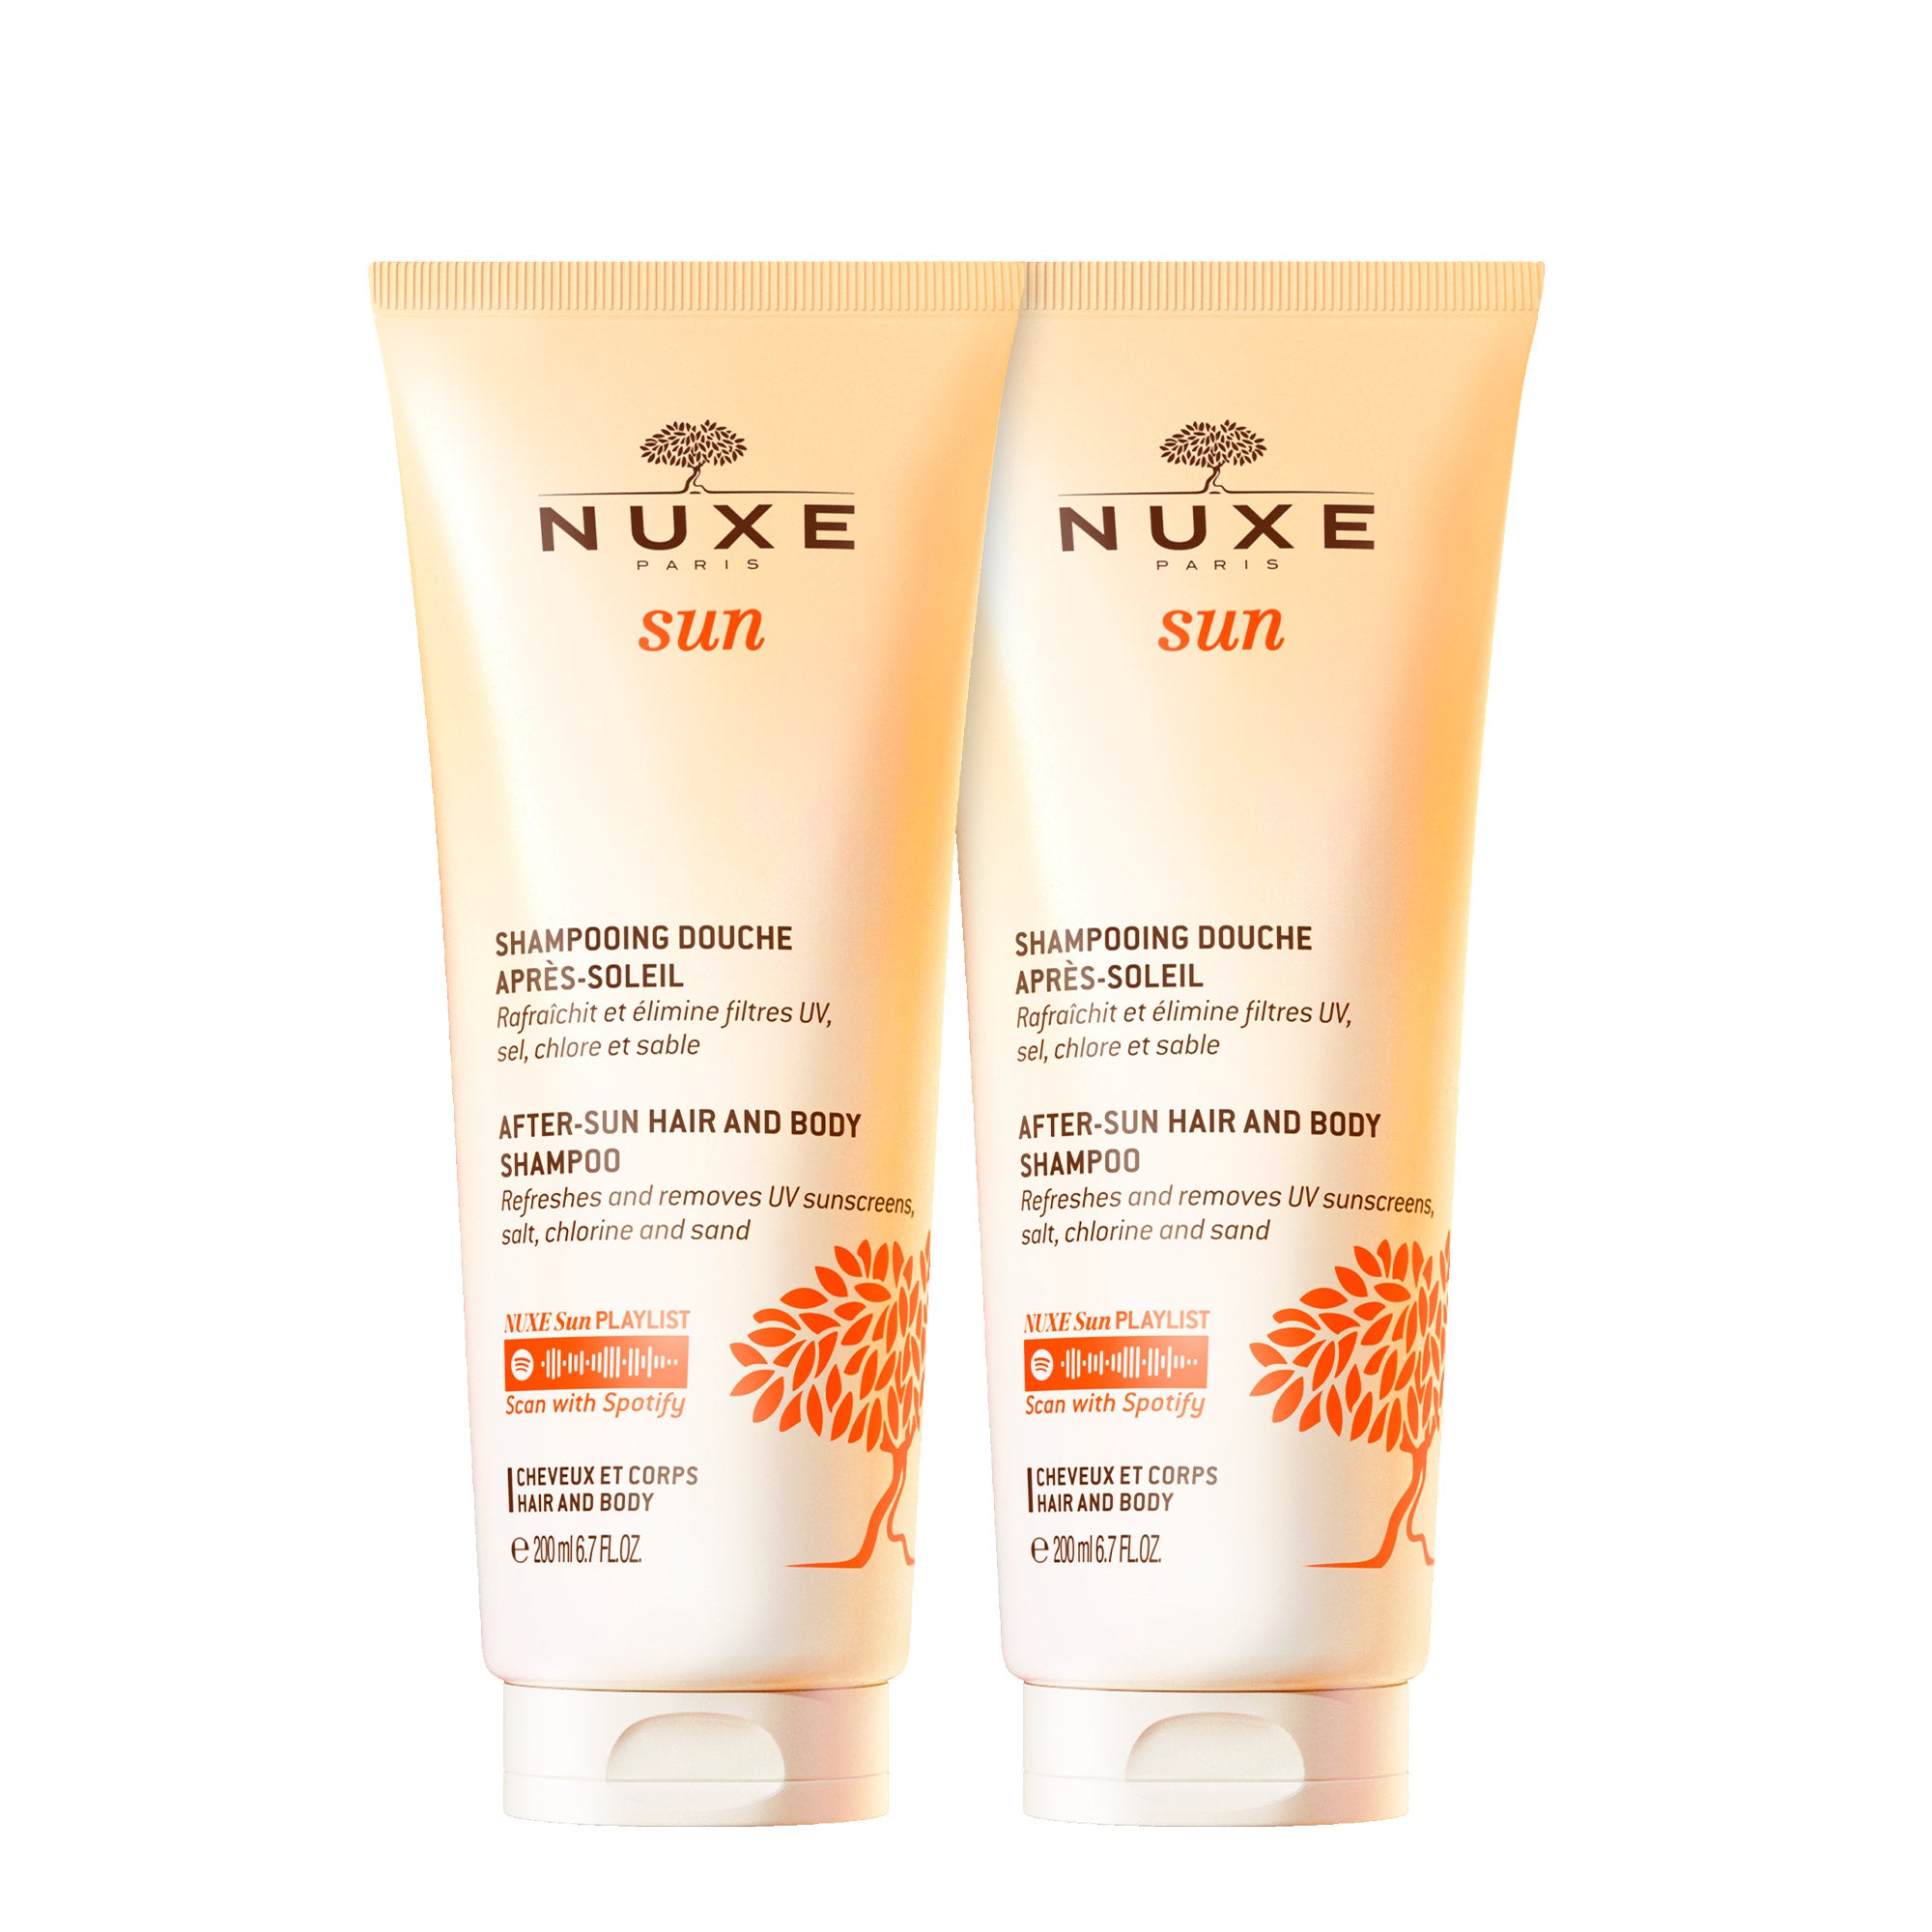 Duo Dusch Shampoo, NUXE Sun